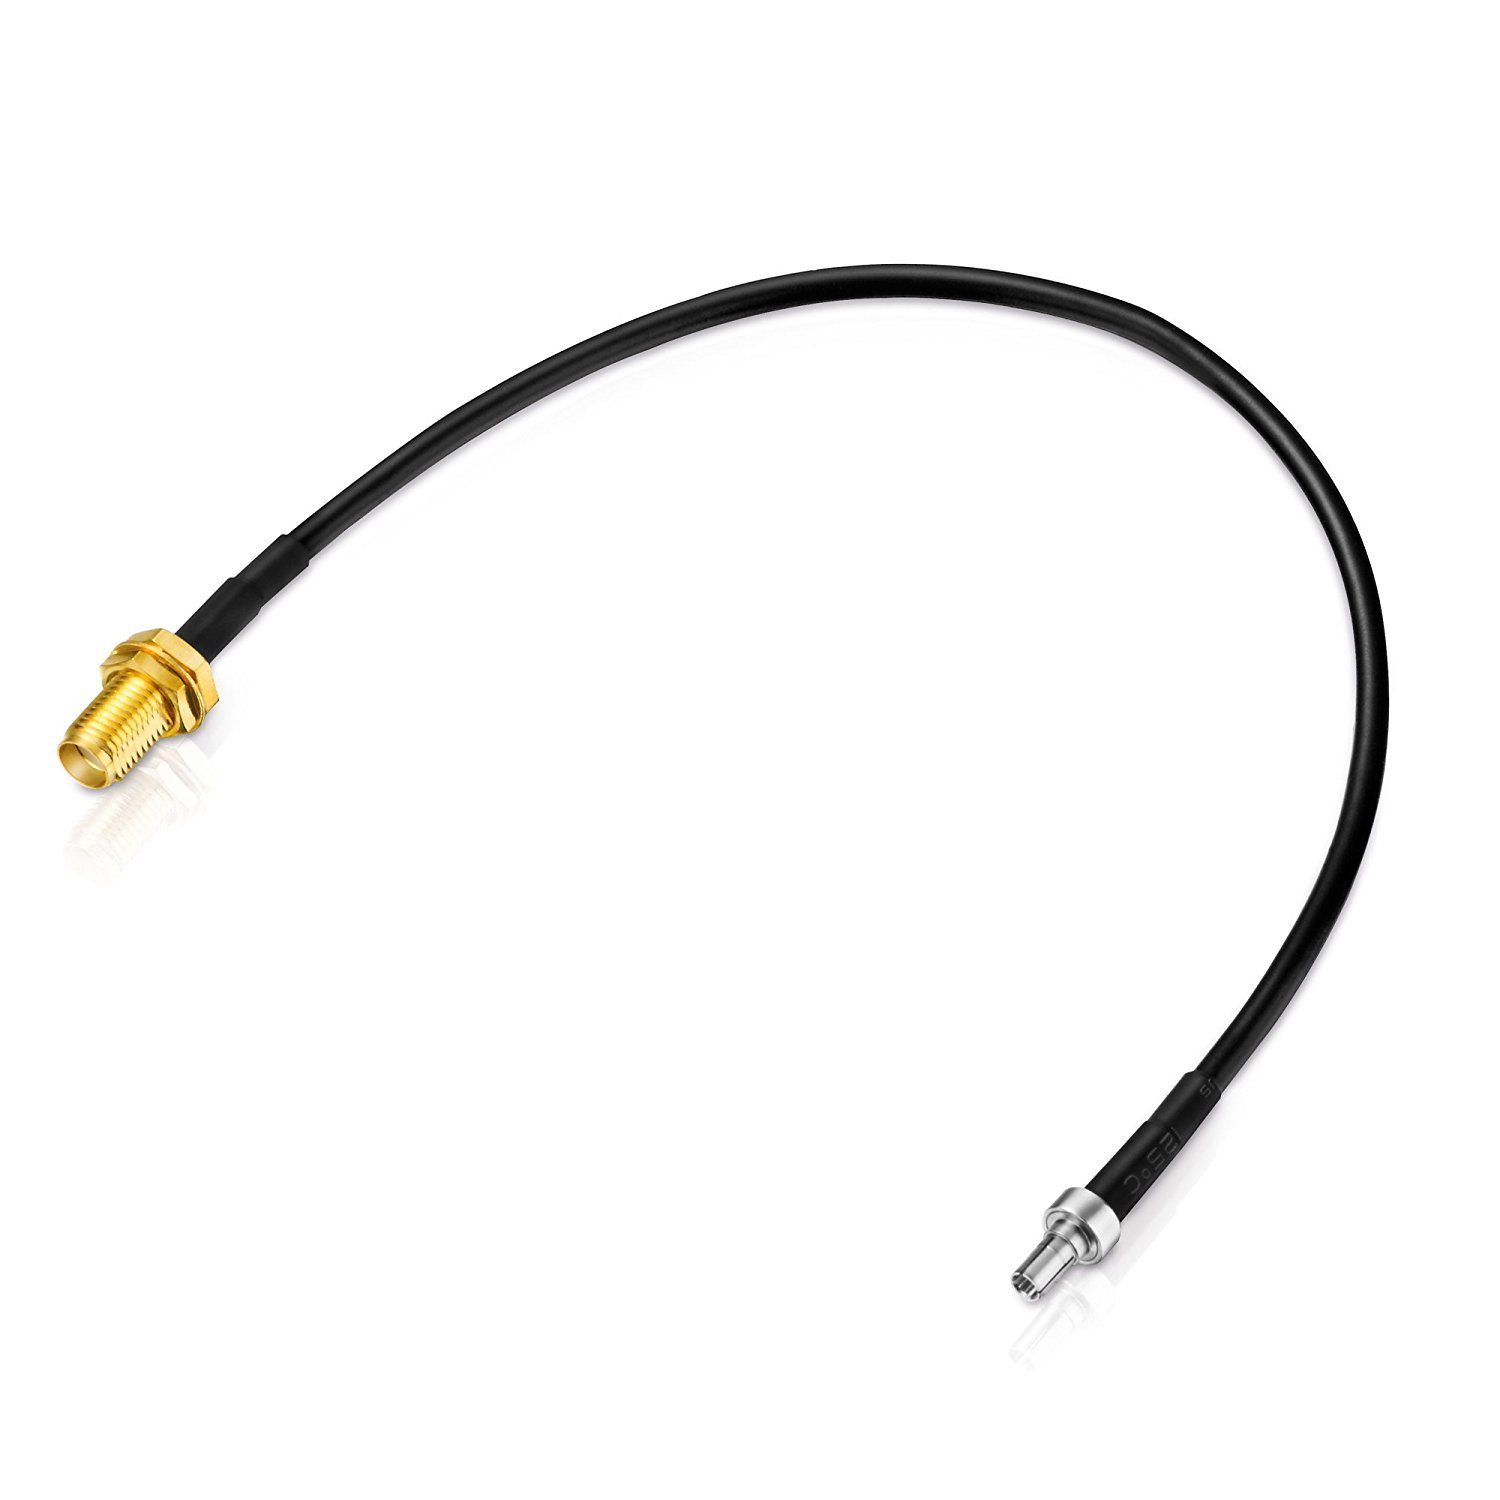 conecto 20 cm Pigtail CRC9-Stecker gerade / SMA-Buchse Adapter-Kabel für Anten SAT-Kabel